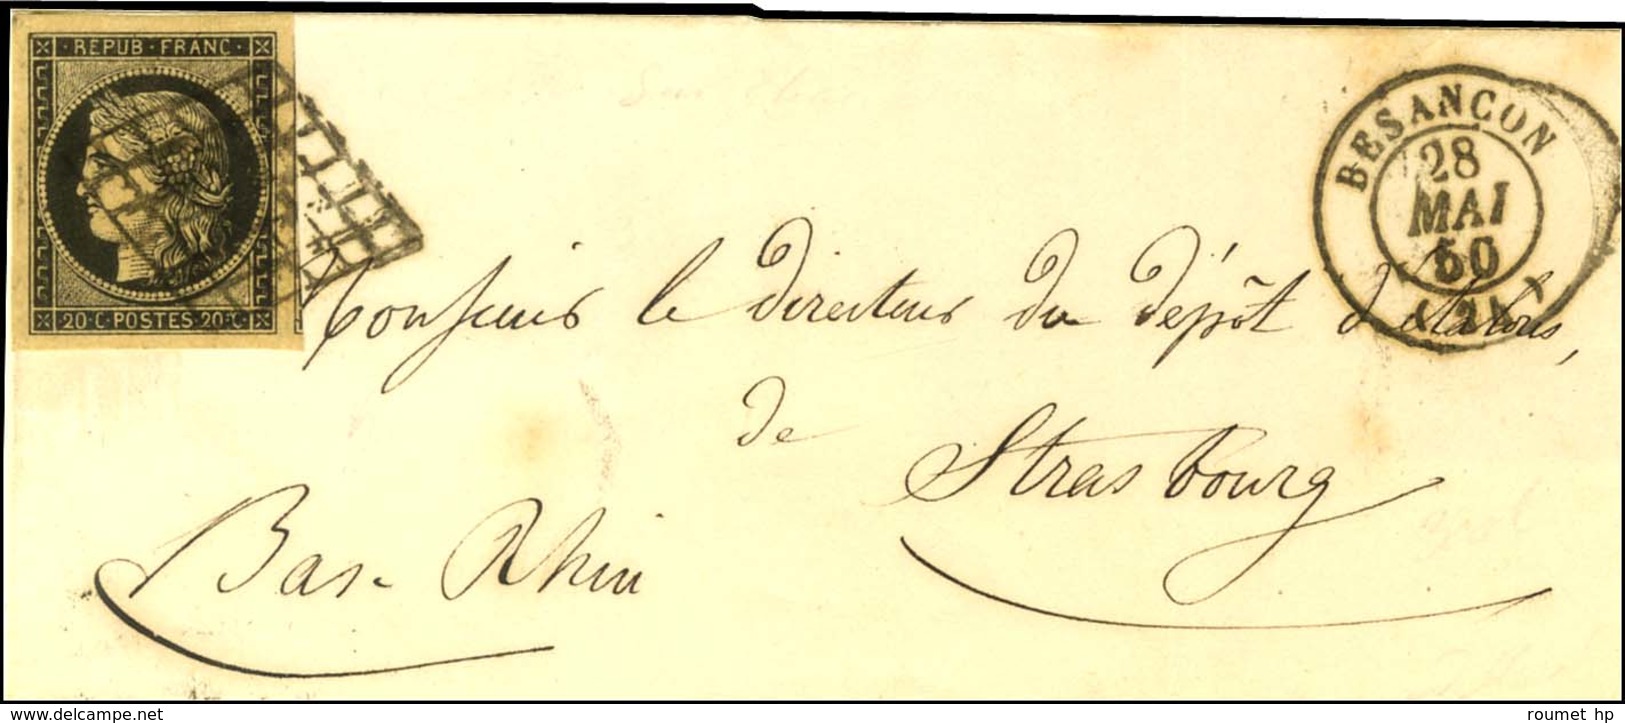 Grille / N° 3 Nuance Chamois, Superbes Marges Càd T 15 BESANCON (24) Sur Lettre Partielle Pour Strasbourg. 1850. - TB. - - 1849-1850 Cérès